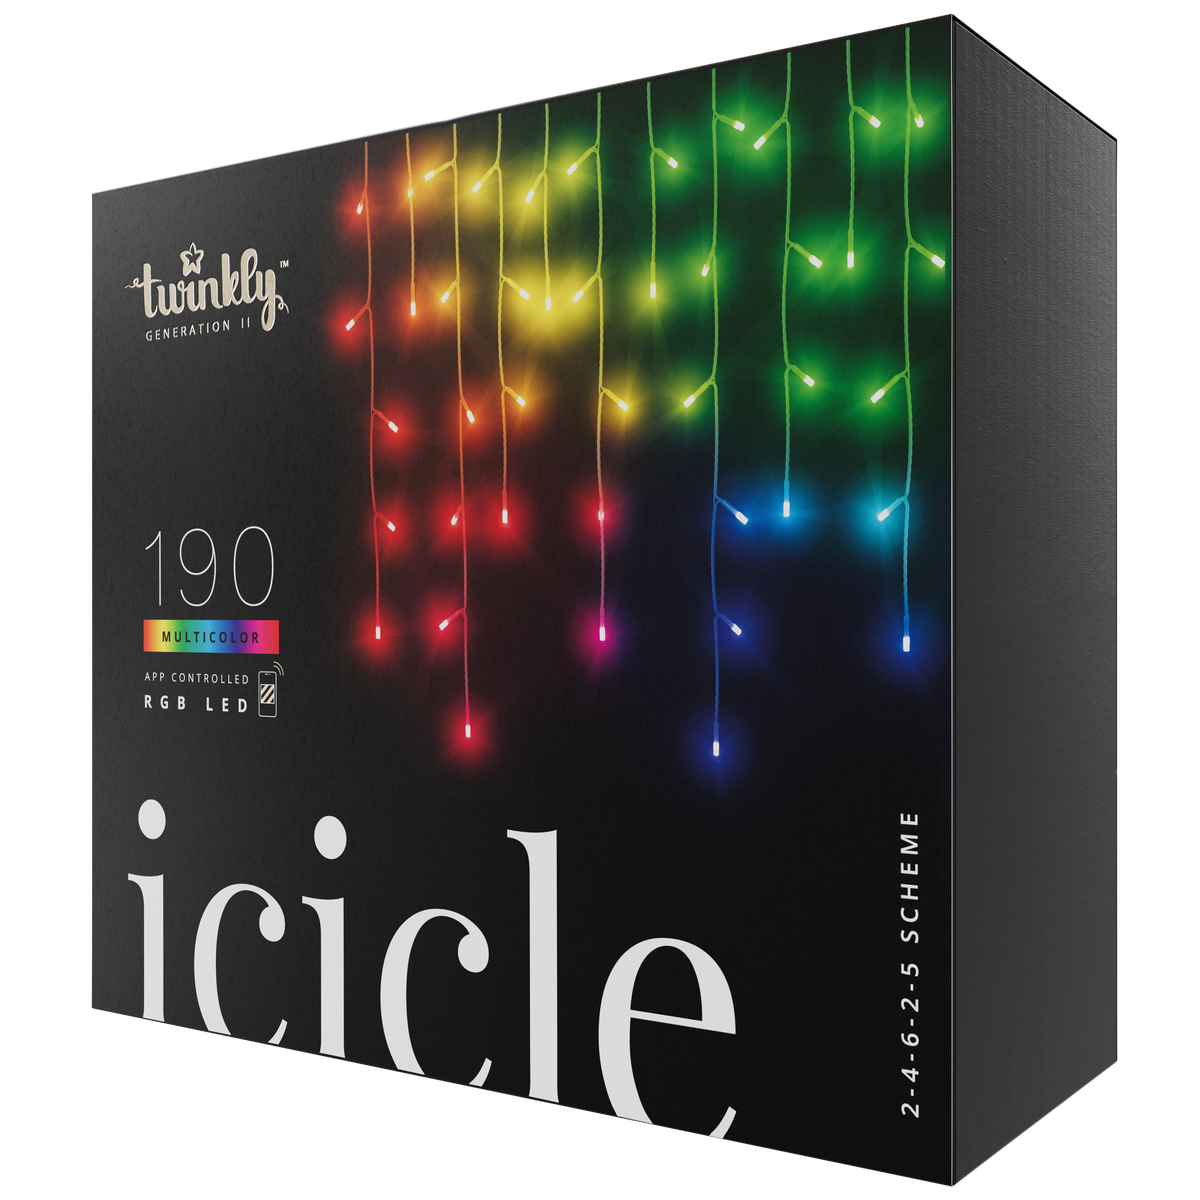 Icicle (різнокольорове видання)